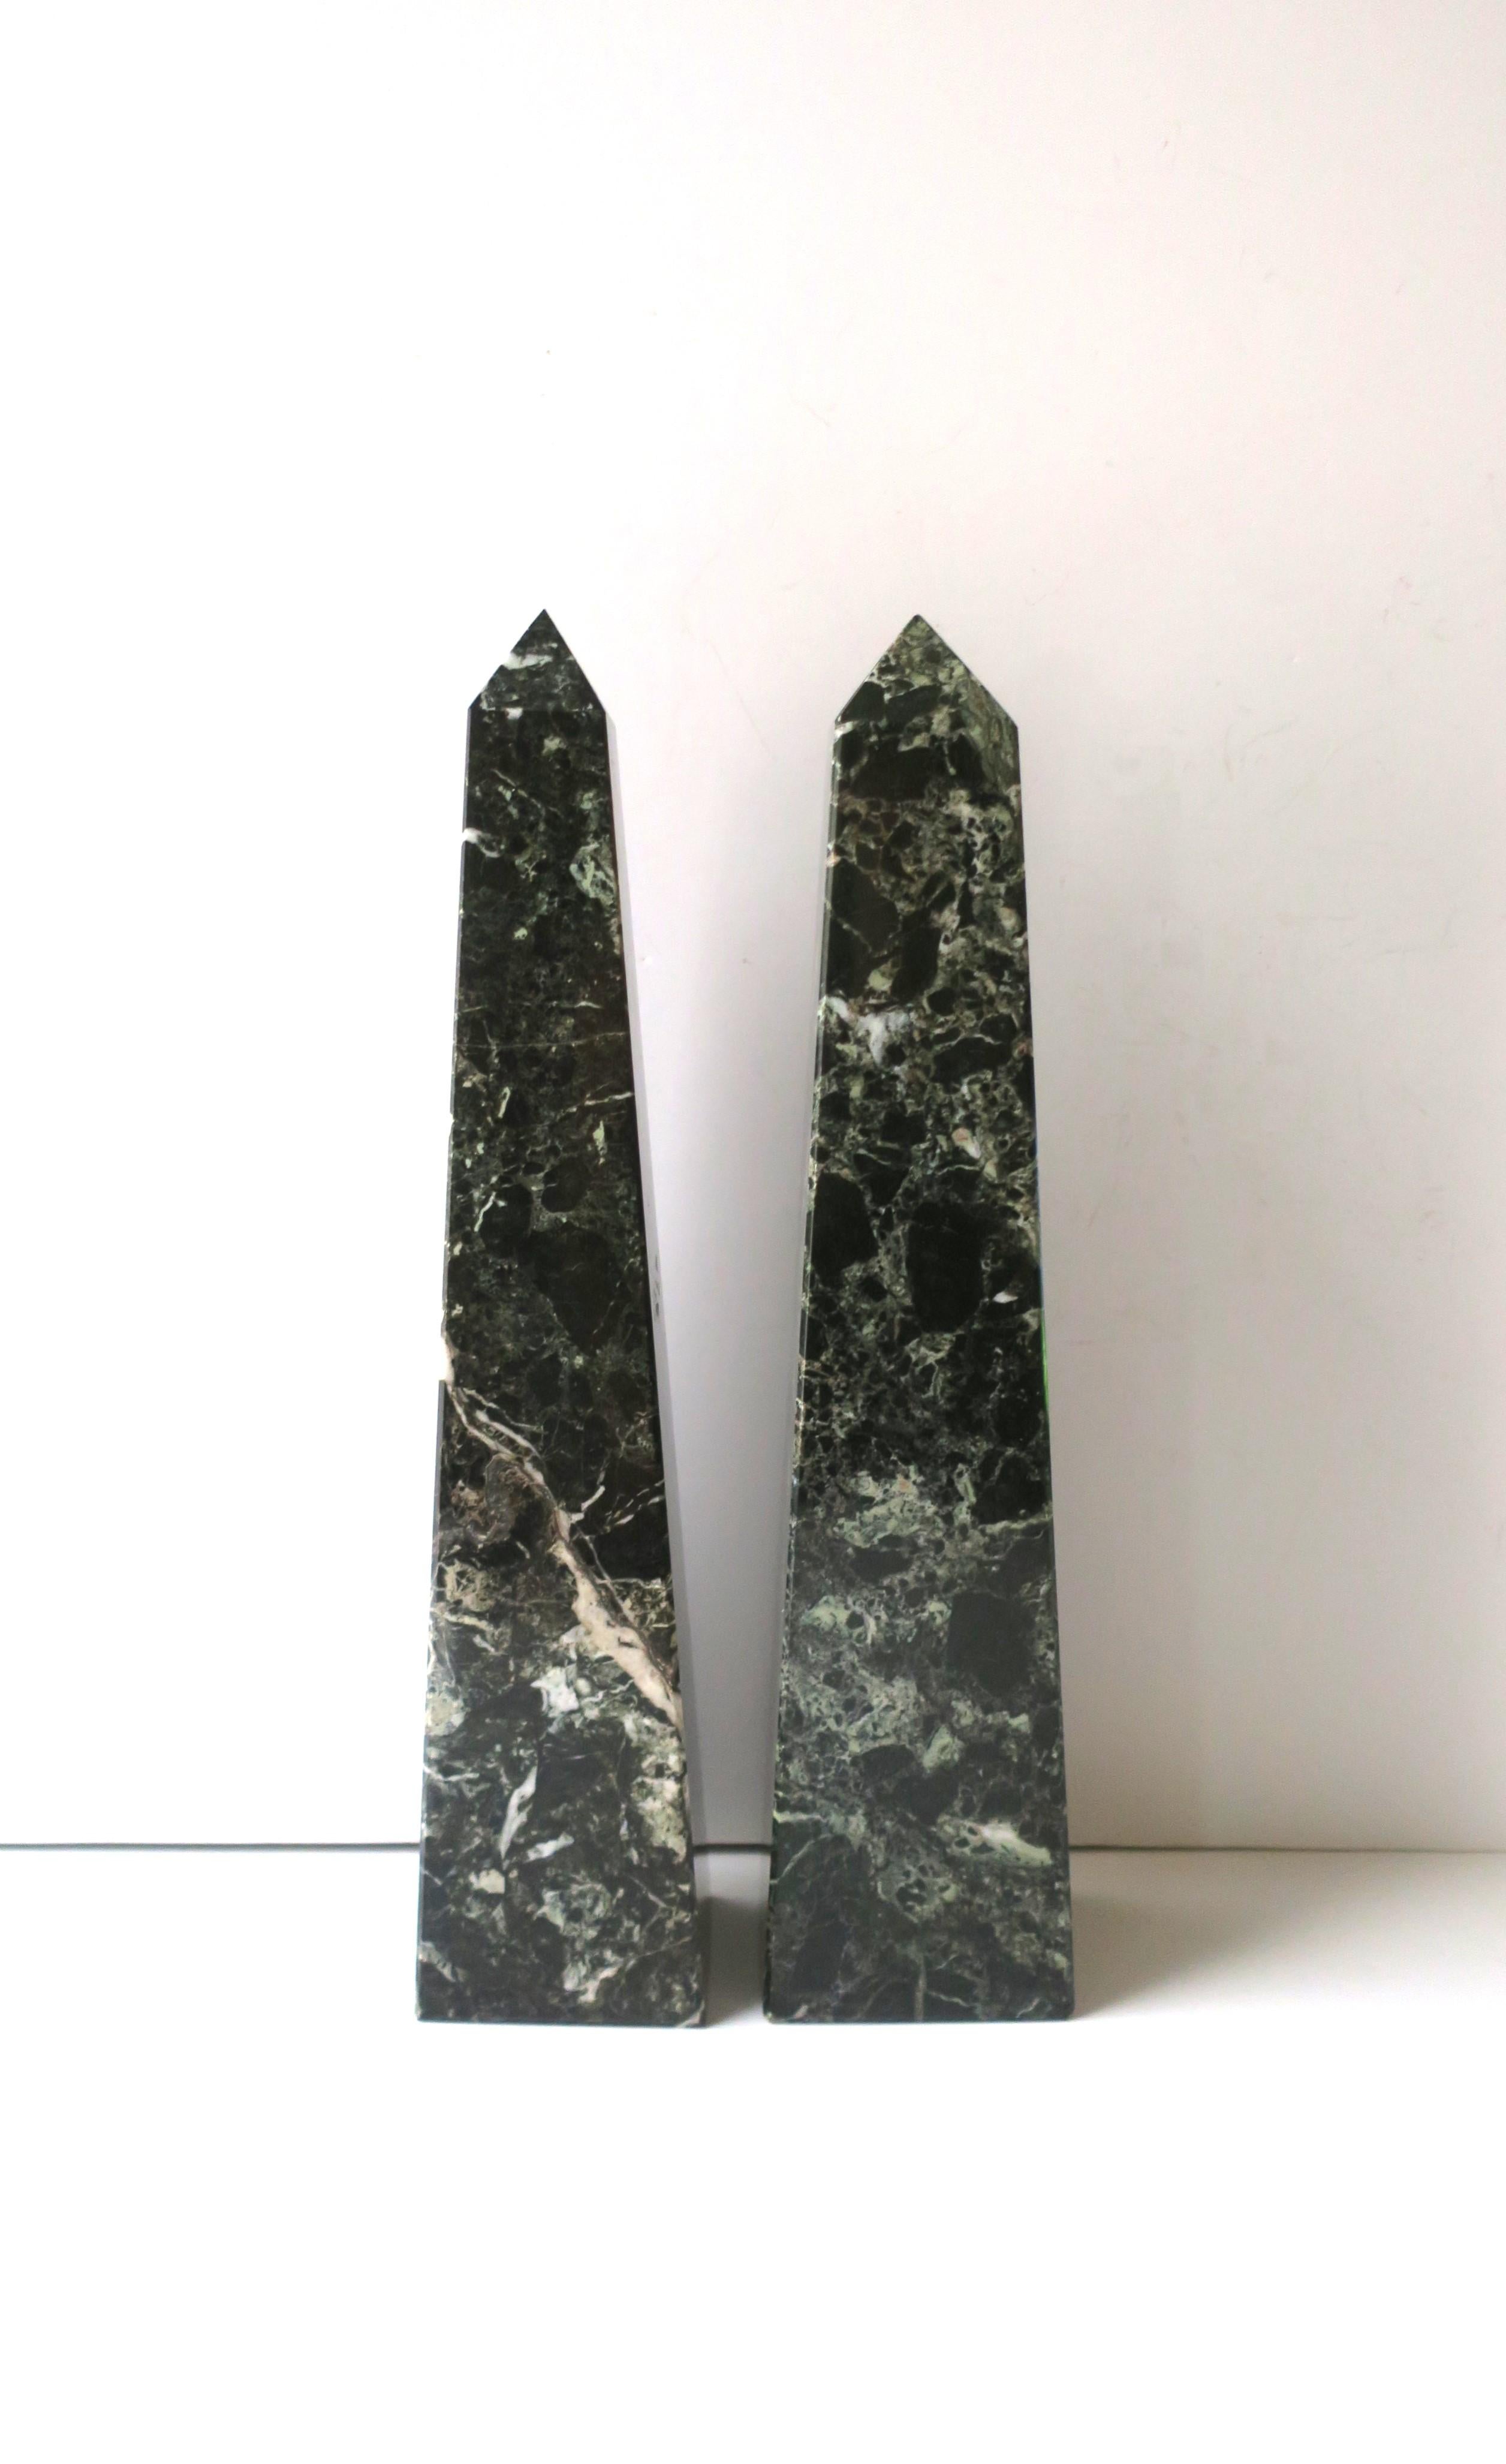 Ein beachtliches Paar Obelisken aus Marmor, im modernen Stil, etwa Mitte des 20. Die Paare sind sehr dunkelgrün, waldgrün, mit weißer und hellgrüner Äderung. Sehr guter Zustand, wie auf den Bildern zu sehen. Keine Chips festgestellt. Abmessungen: